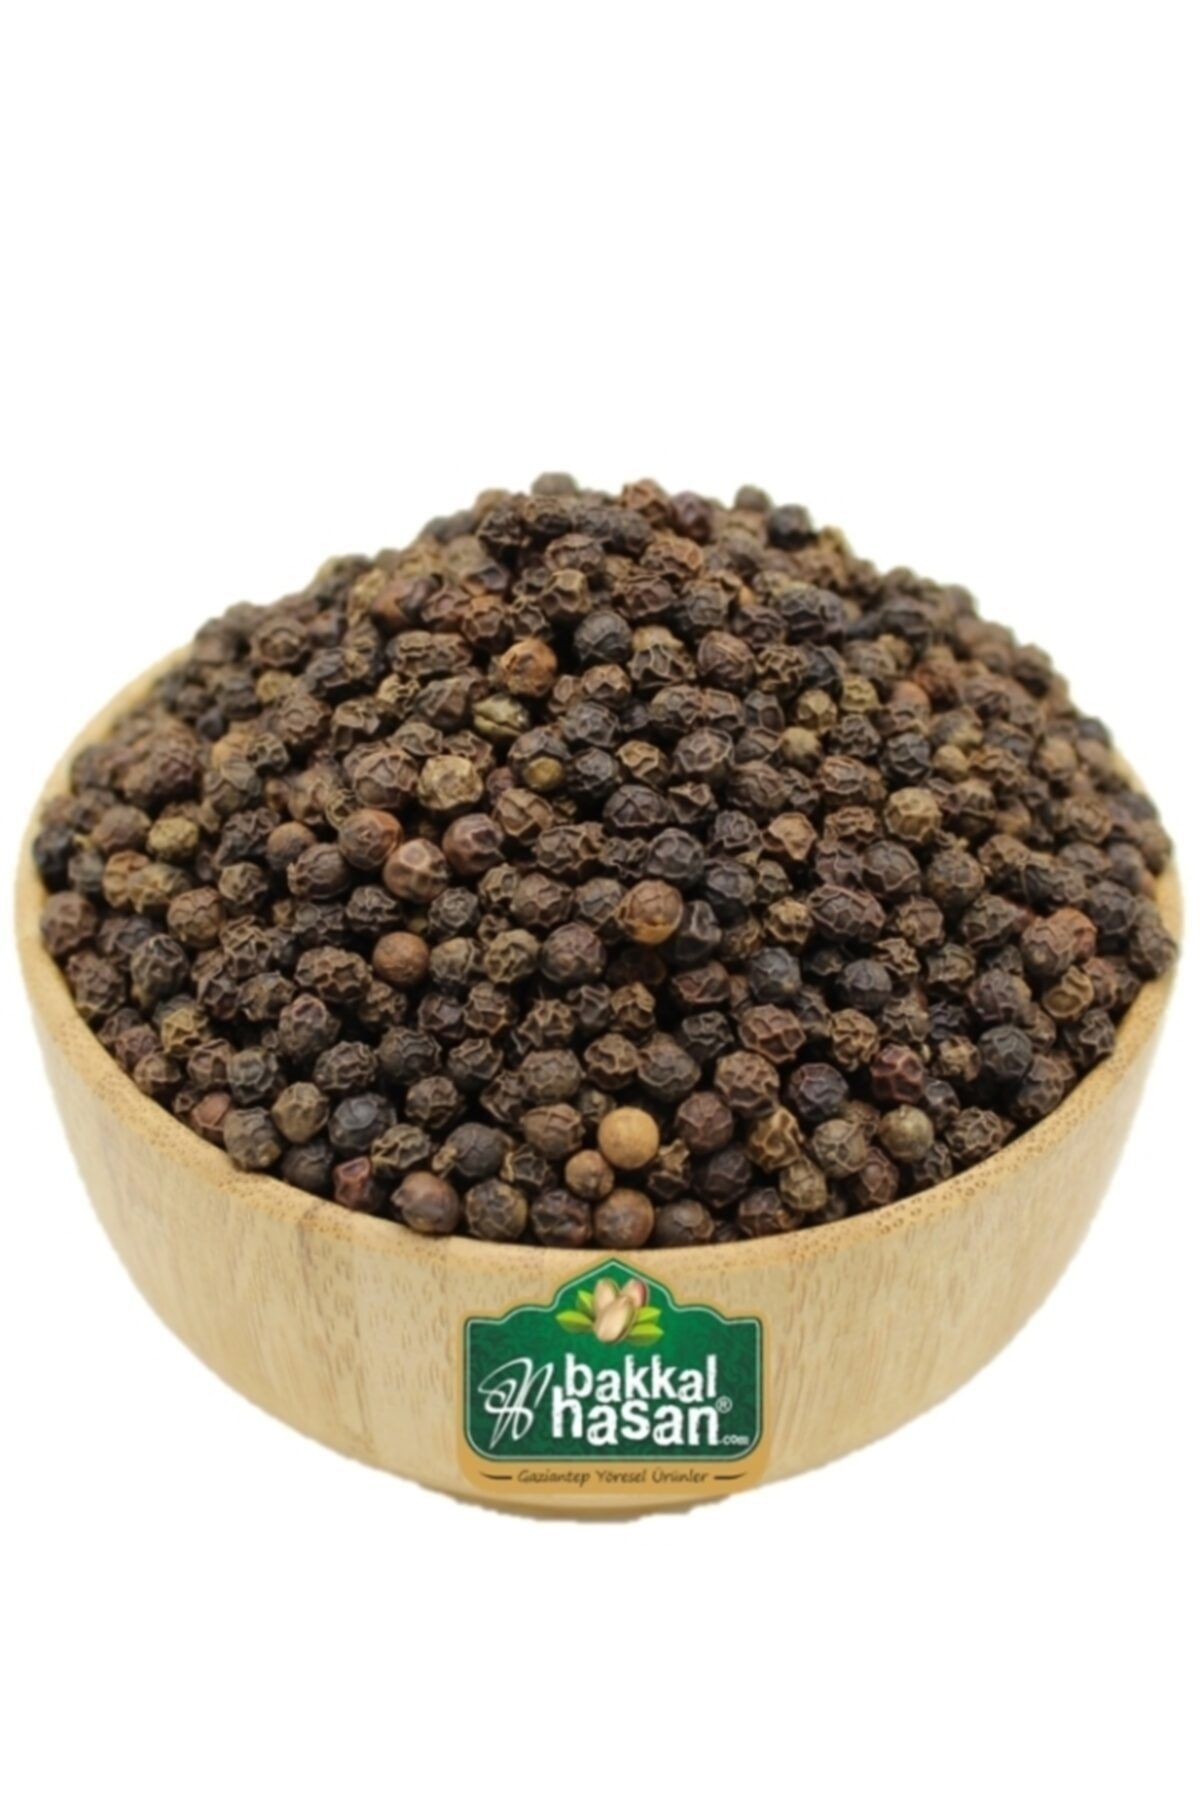 bakkal hasan Karabiber Siyah Tane - 250 Gr